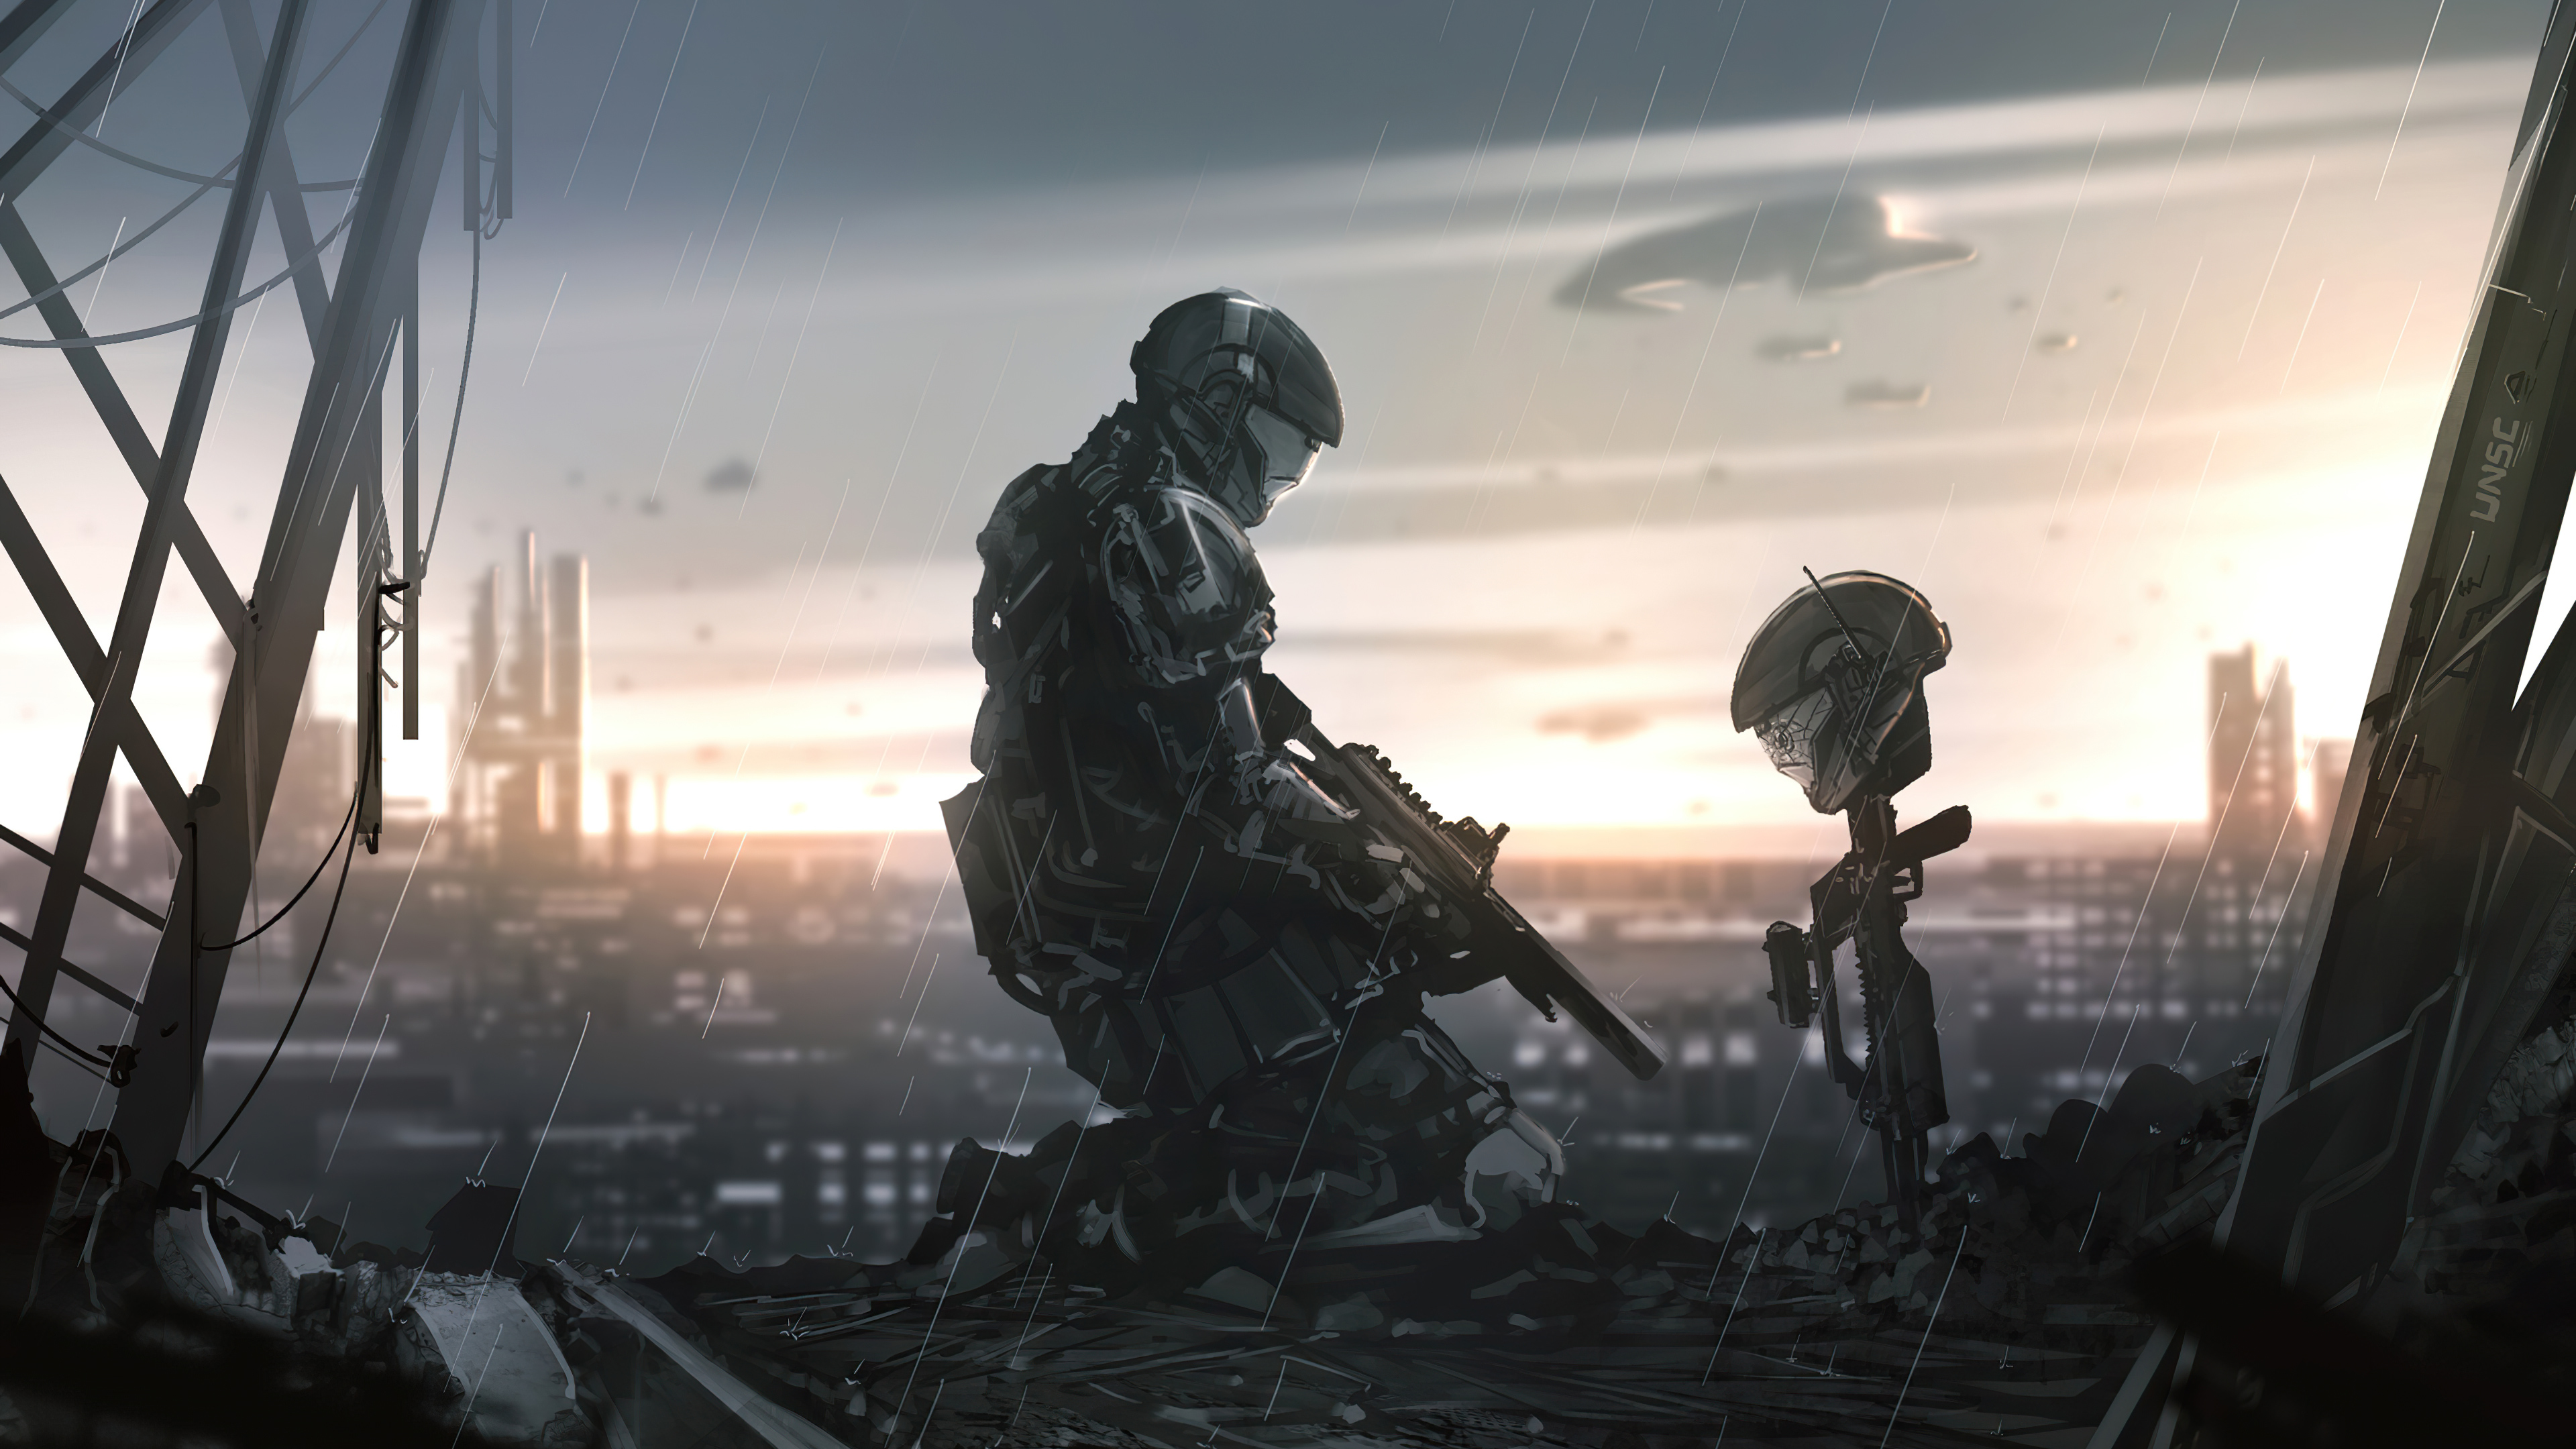 Honoring a Fallen Soldier by Amos Yan 4k Ultra HD Wallpaper